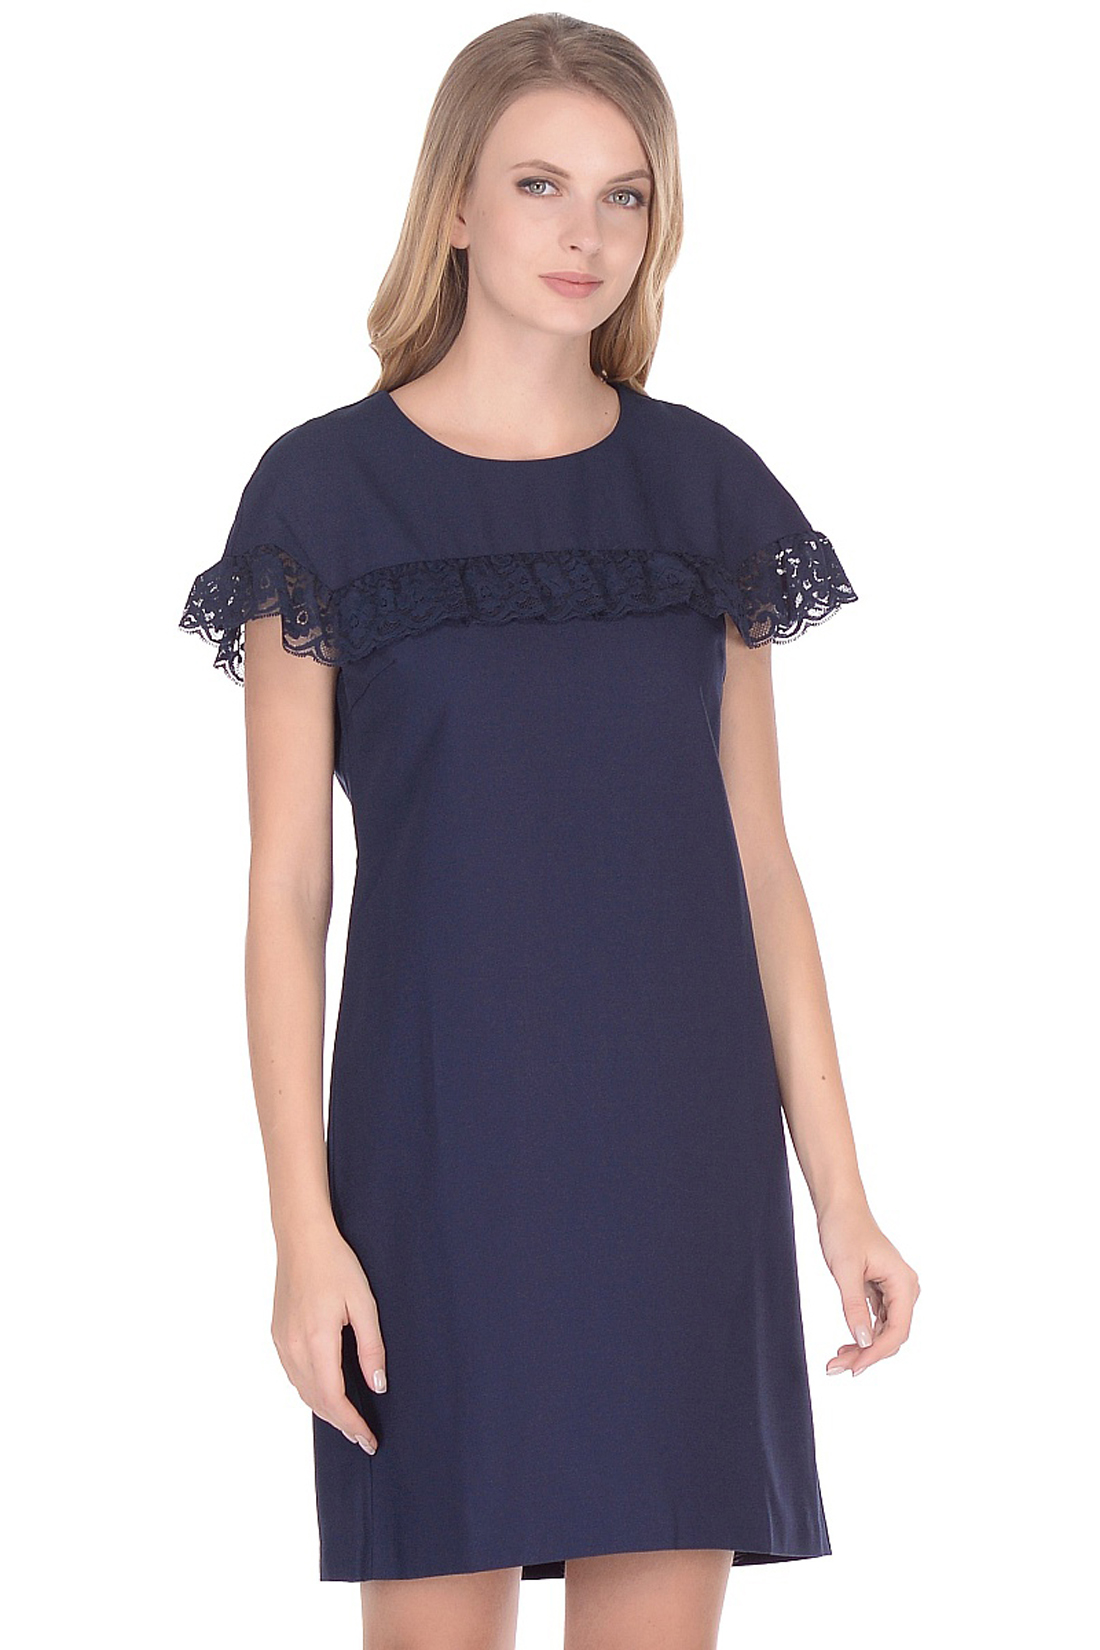 Платье с кружевом на кокетке (арт. baon B458004), размер XS, цвет синий Платье с кружевом на кокетке (арт. baon B458004) - фото 3